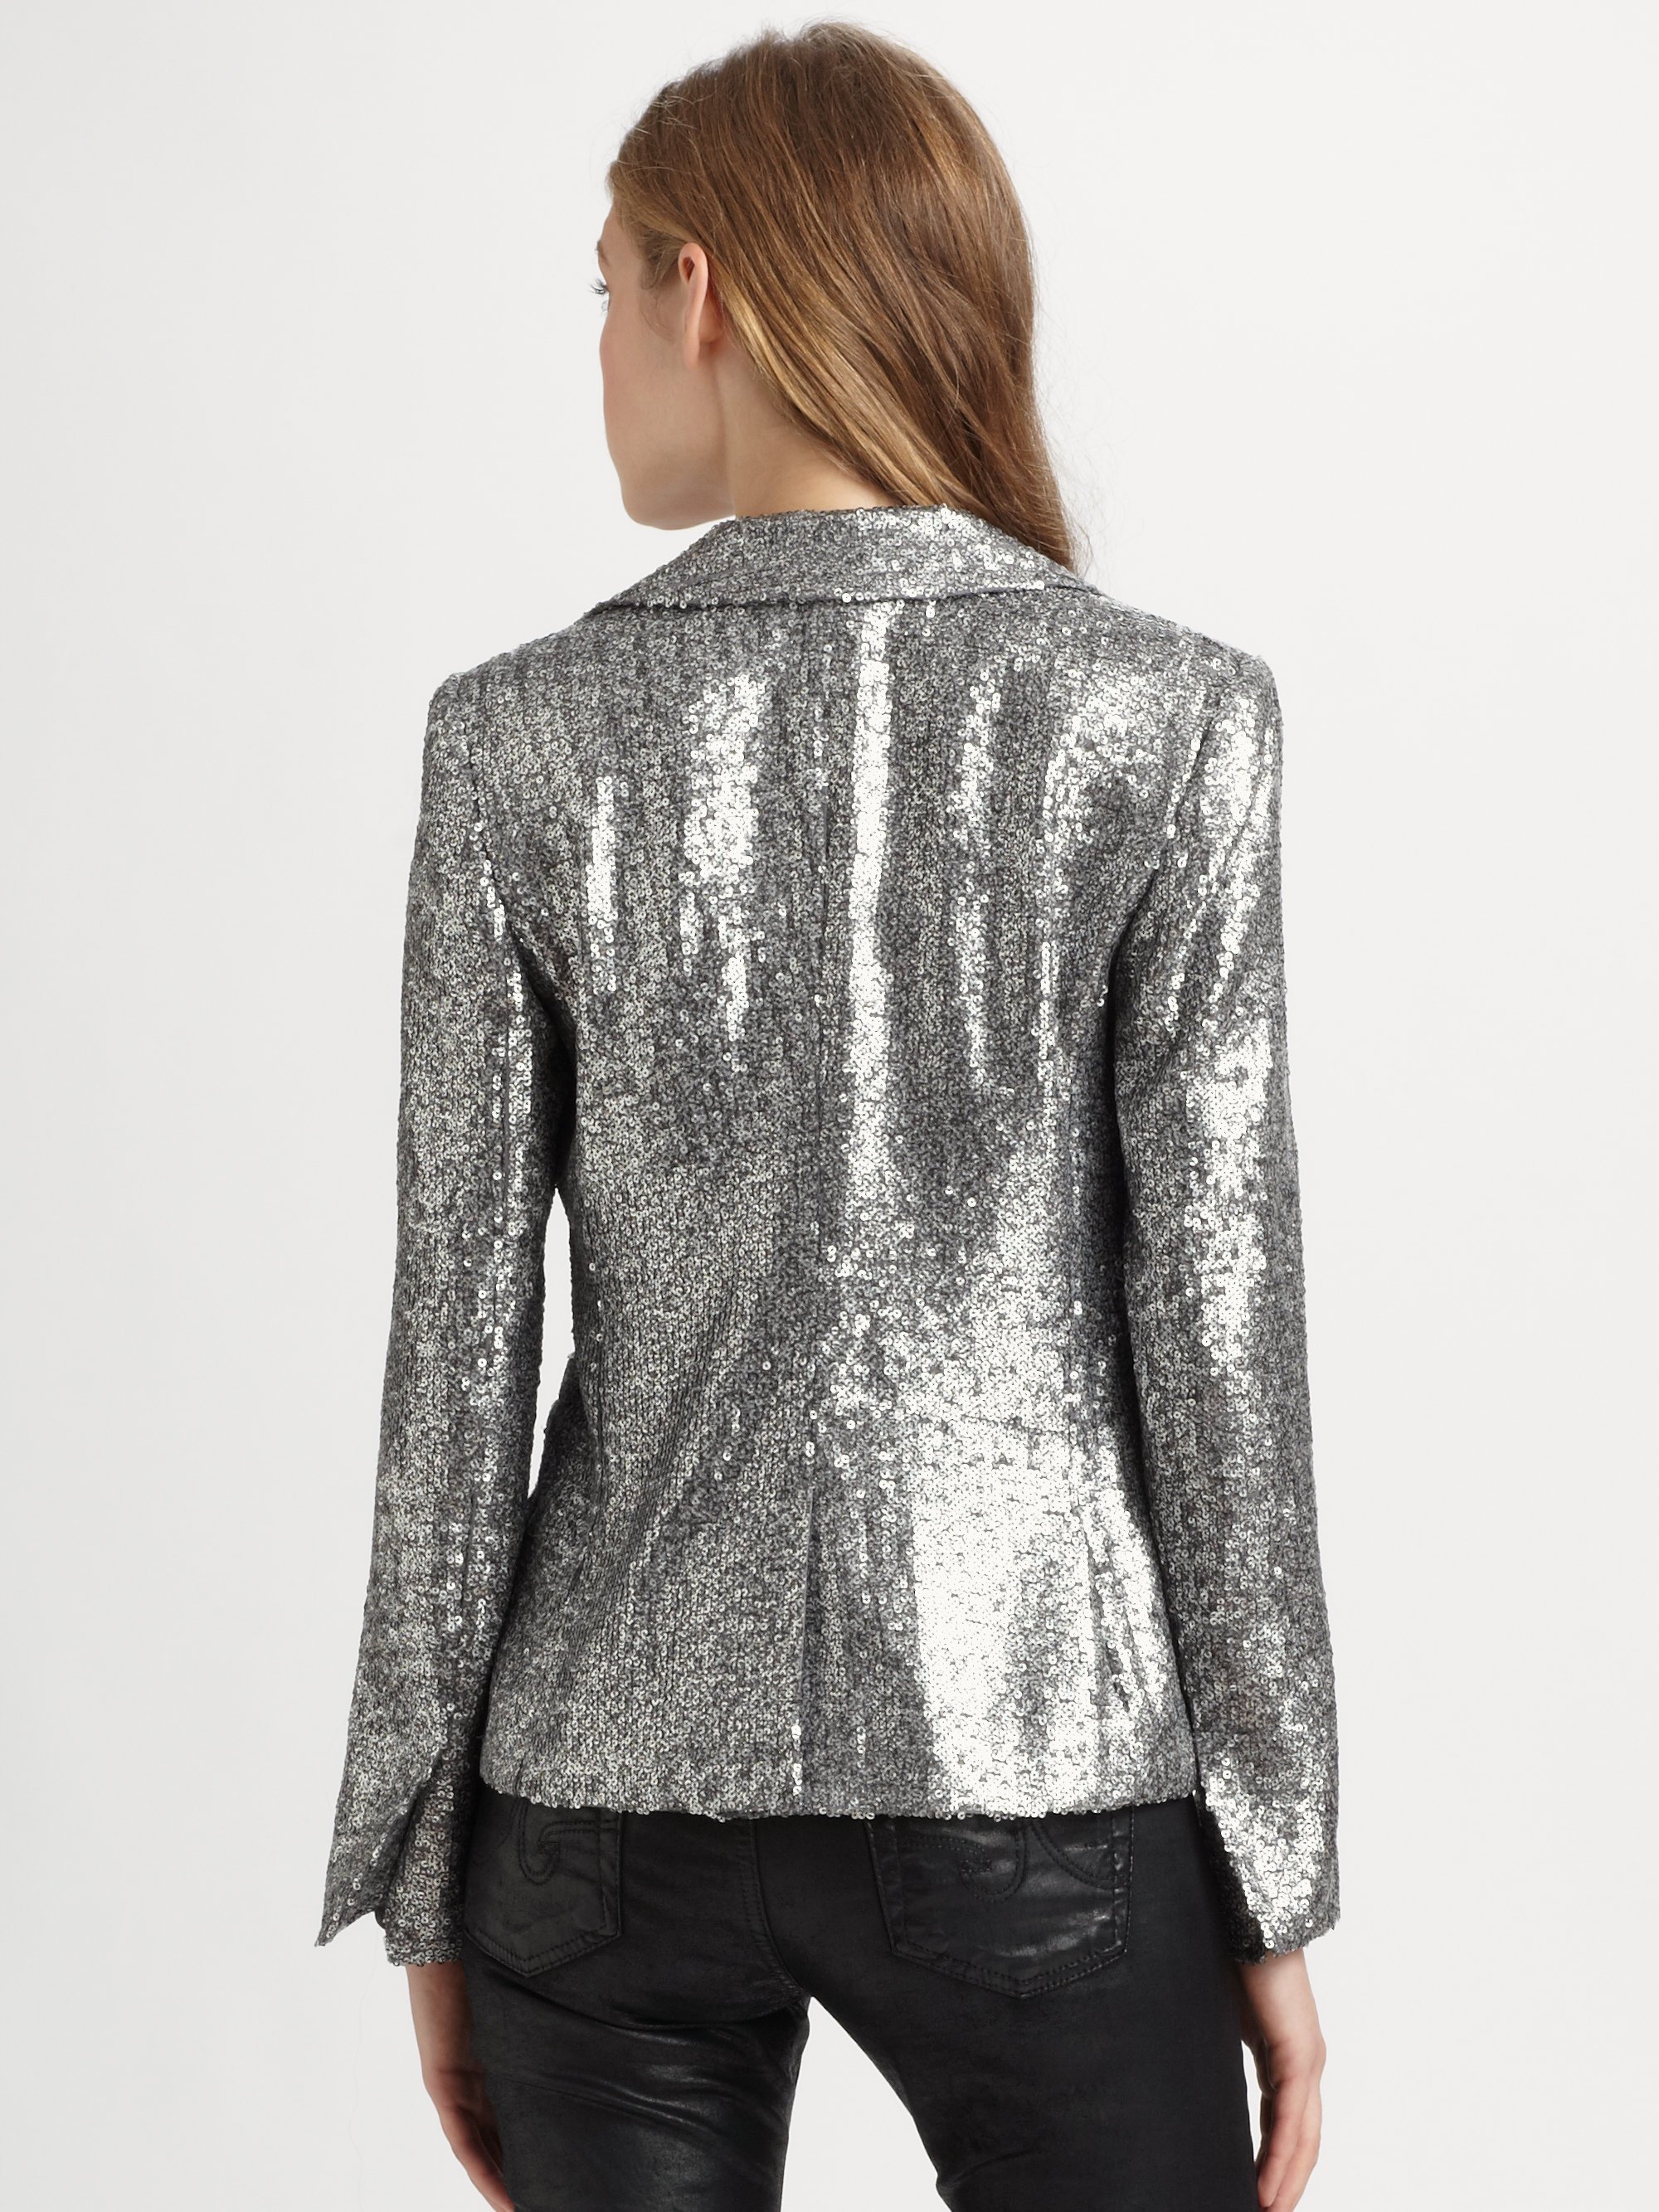 MICHAEL Michael Kors Sequin Blazer in Silver (Metallic) - Lyst